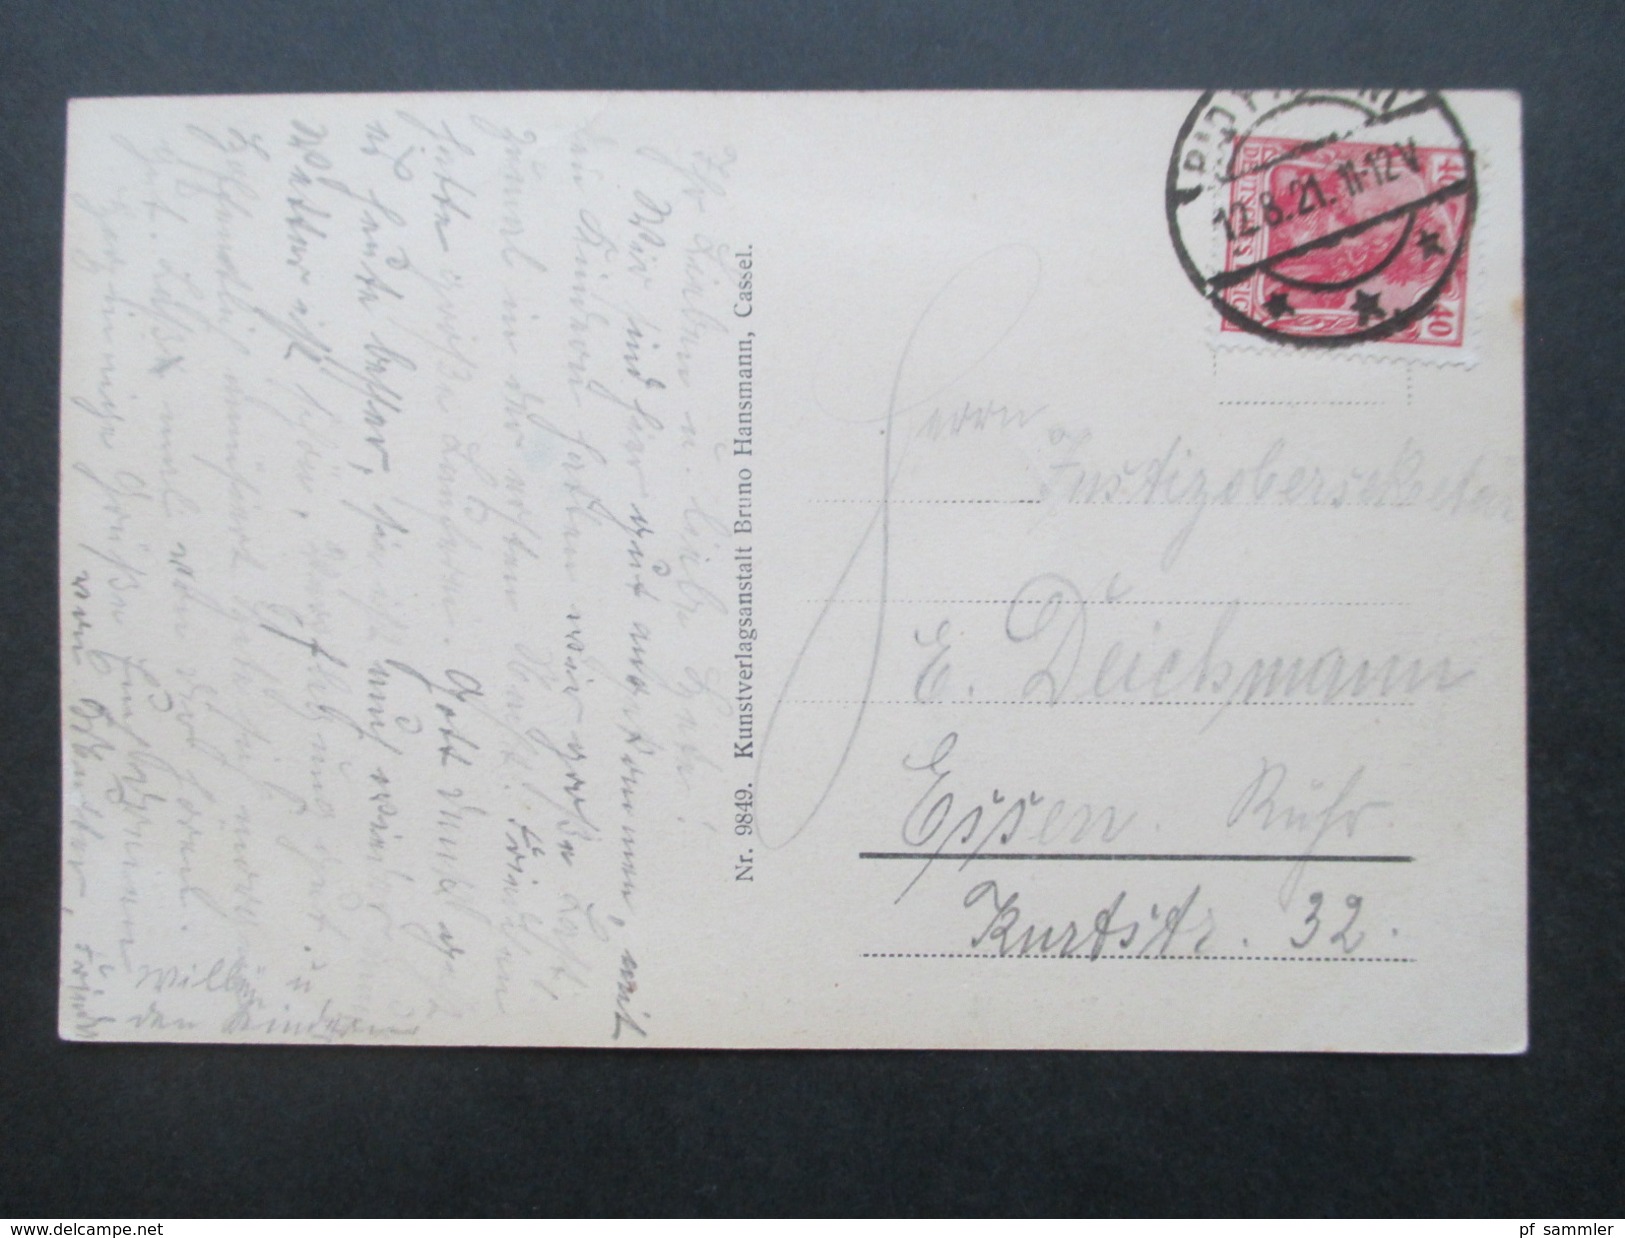 Deutsches Reich 1921 Ansichtkarte Bad Pyrmont. Liegewiese über Den Weiher Gesehen. Bruno Hansmann, Cassel - Bad Pyrmont